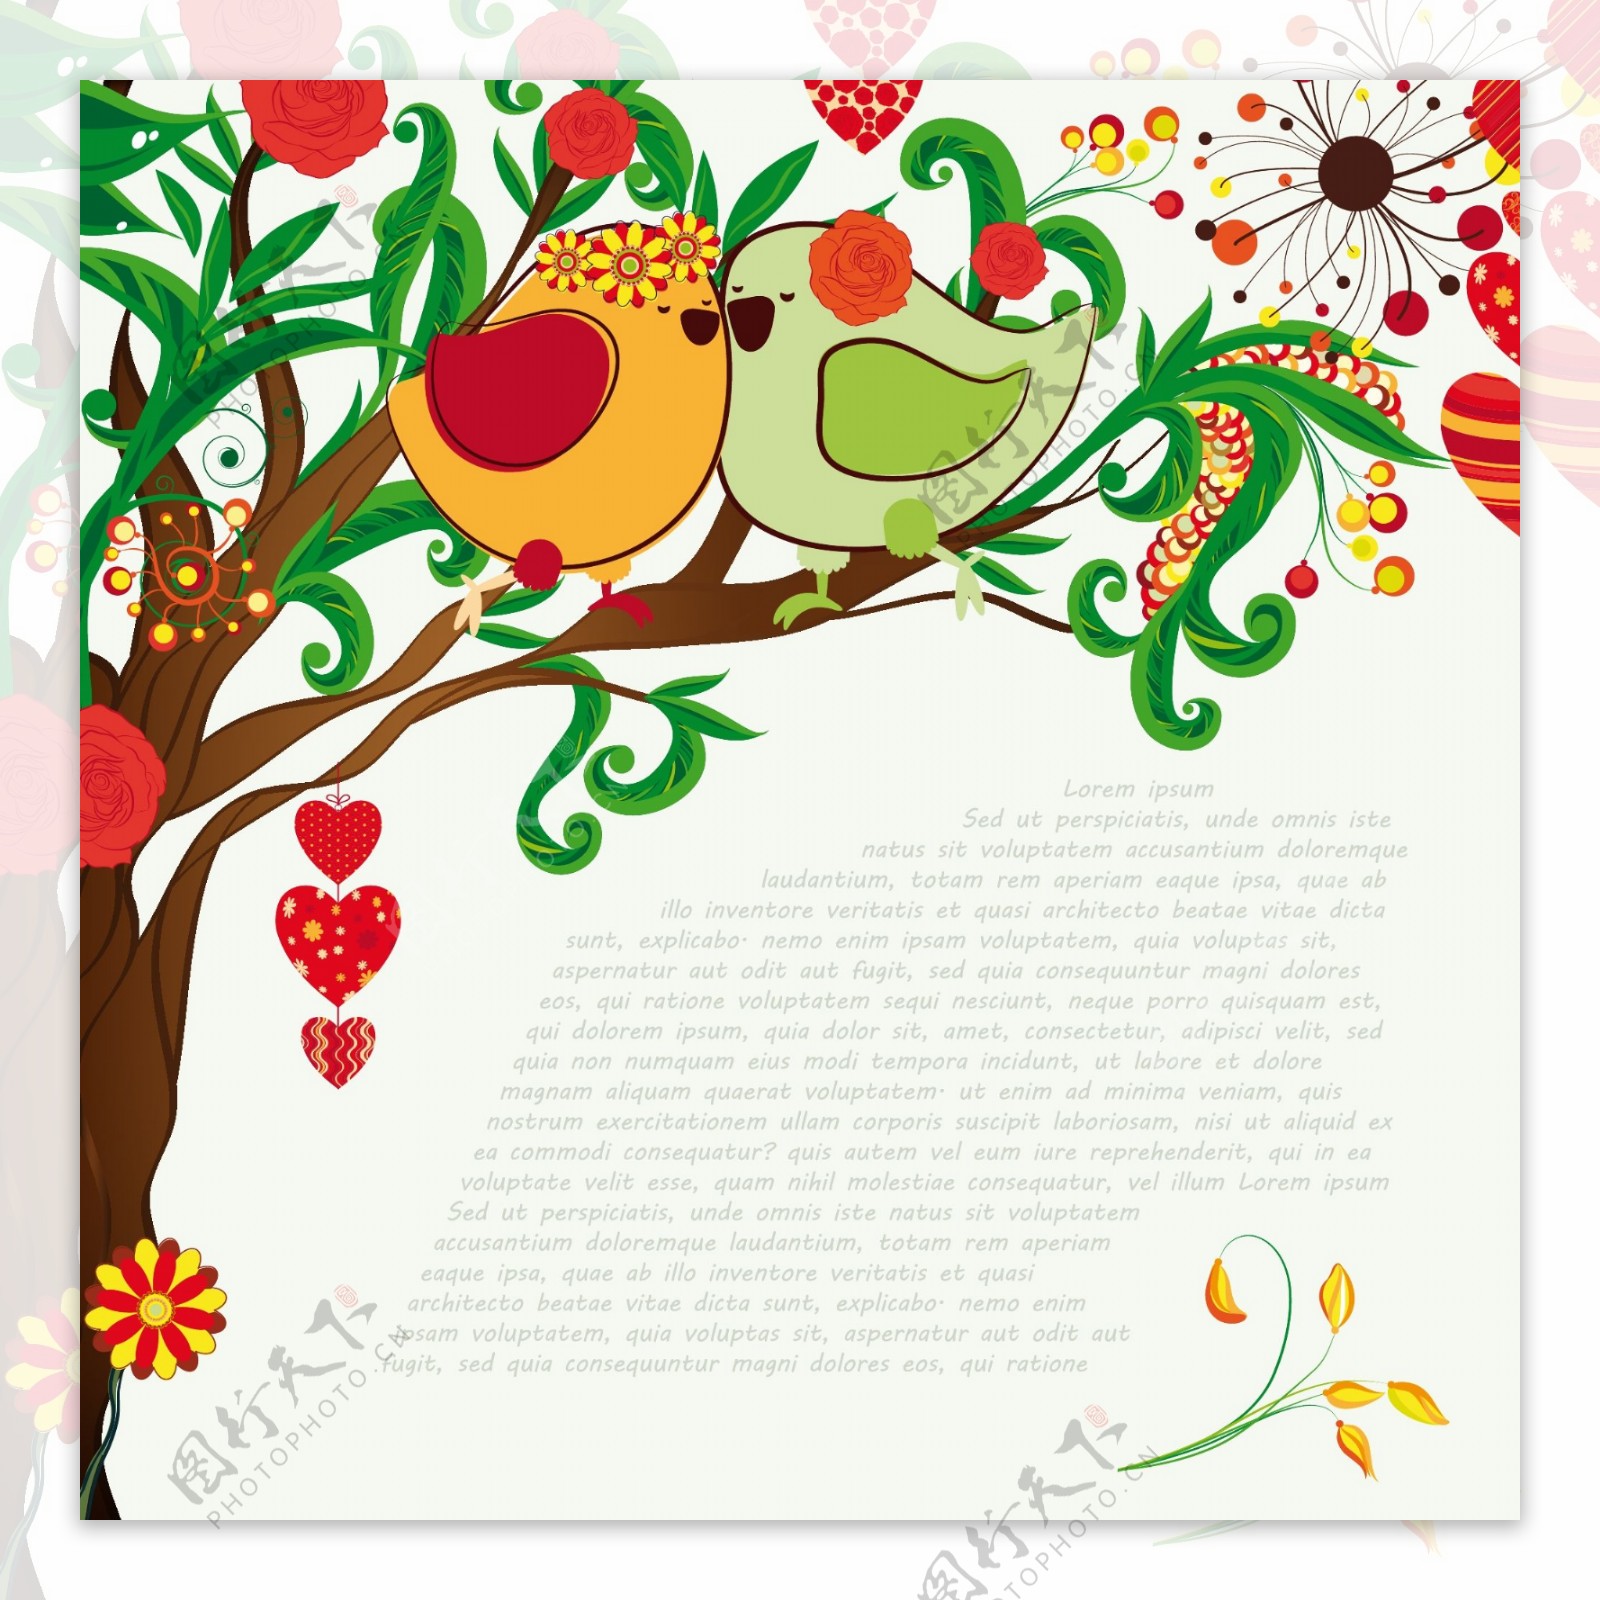 手工绘制的爱情鸟03插图矢量素材手绘插画的爱鸟